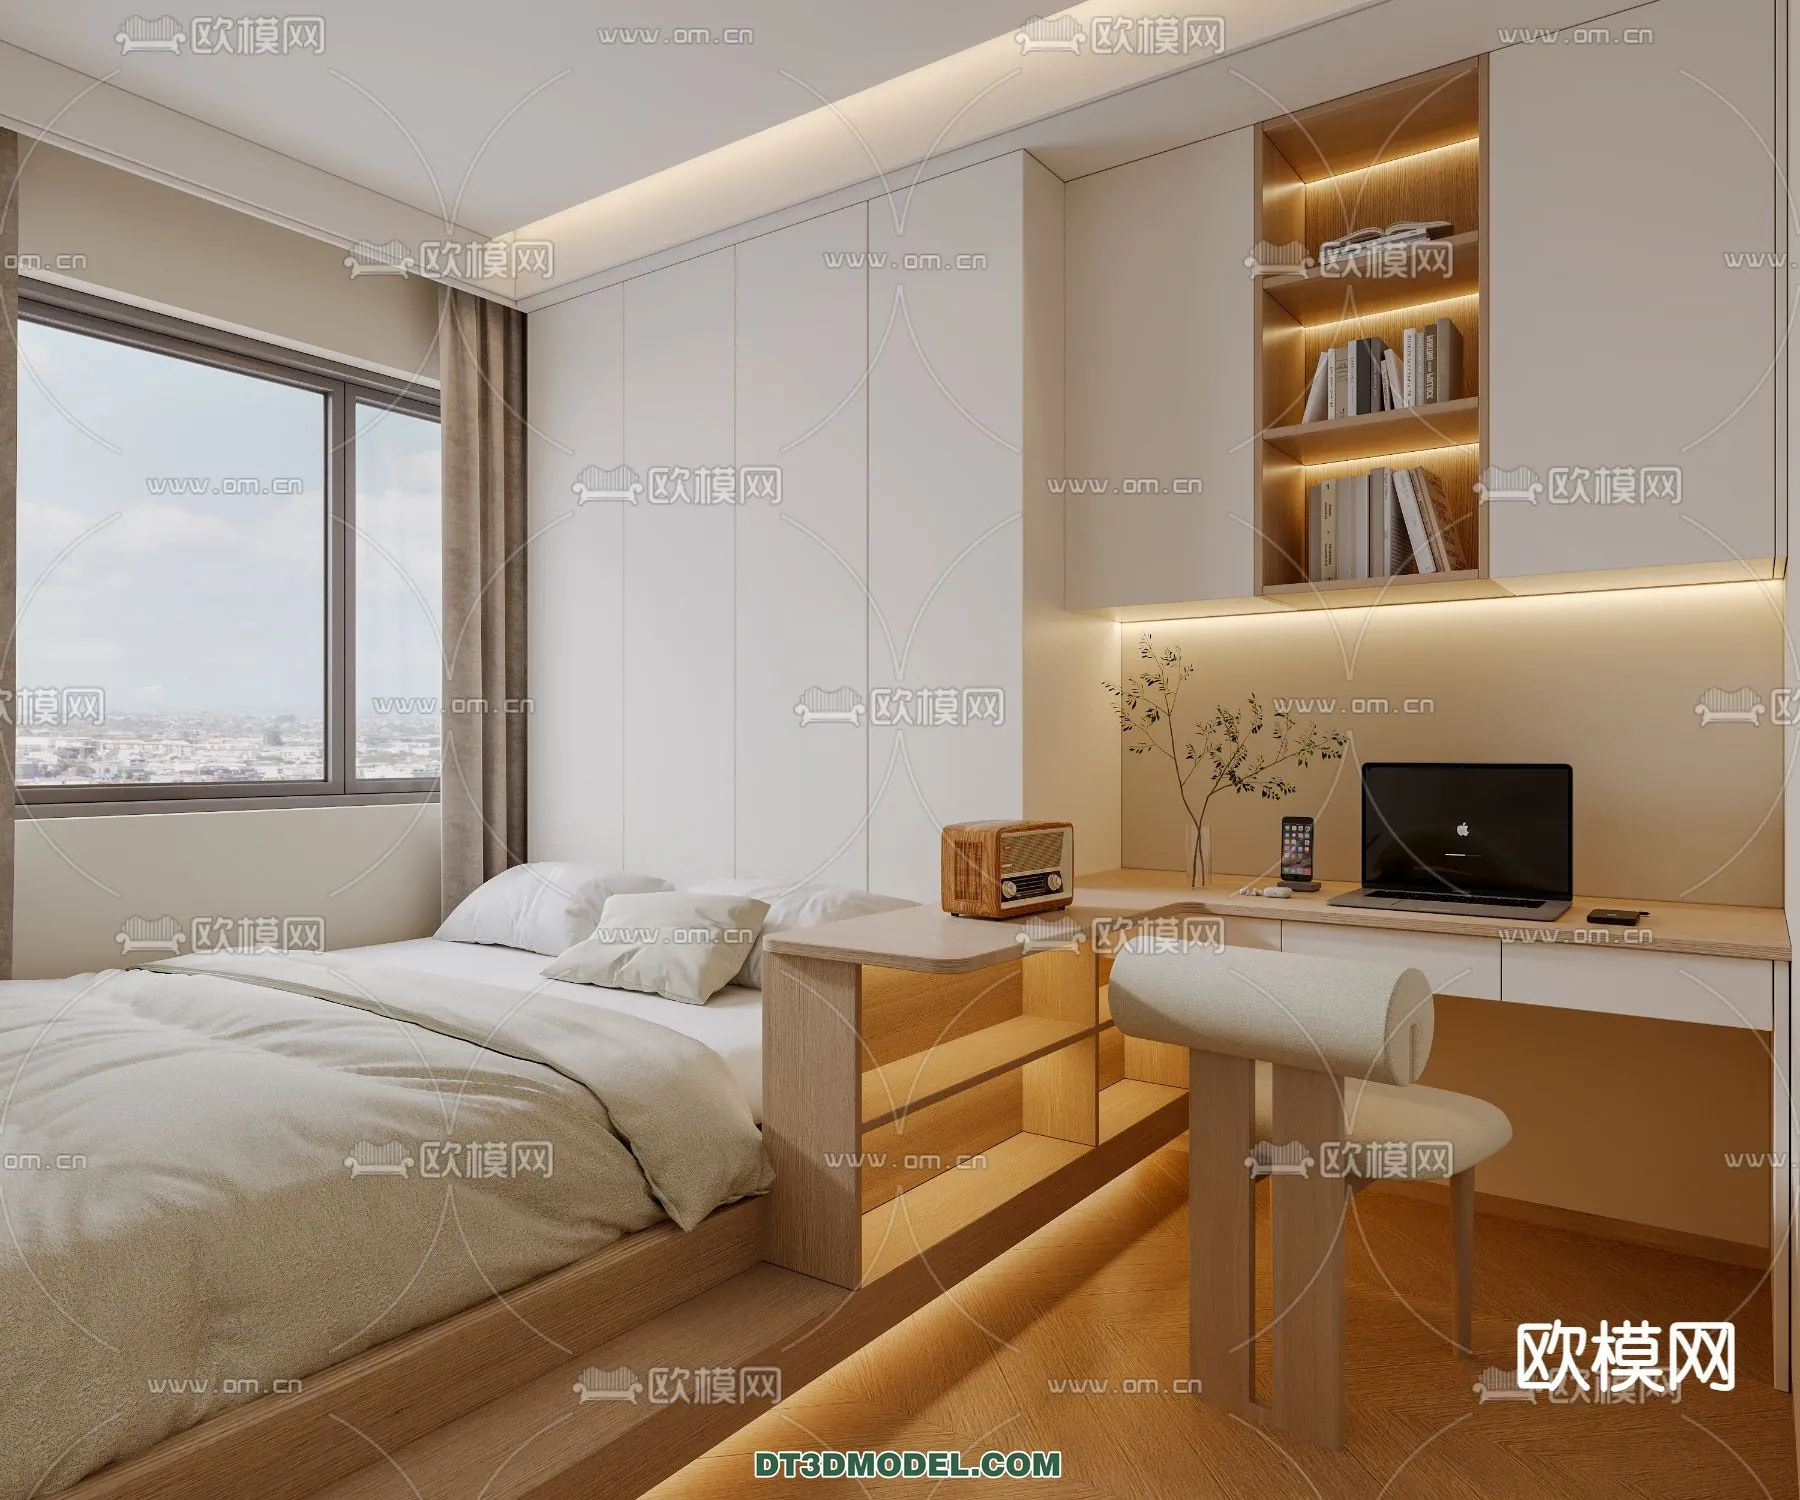 Tatami Bedroom – Japan Bedroom – 3D Scene – 045